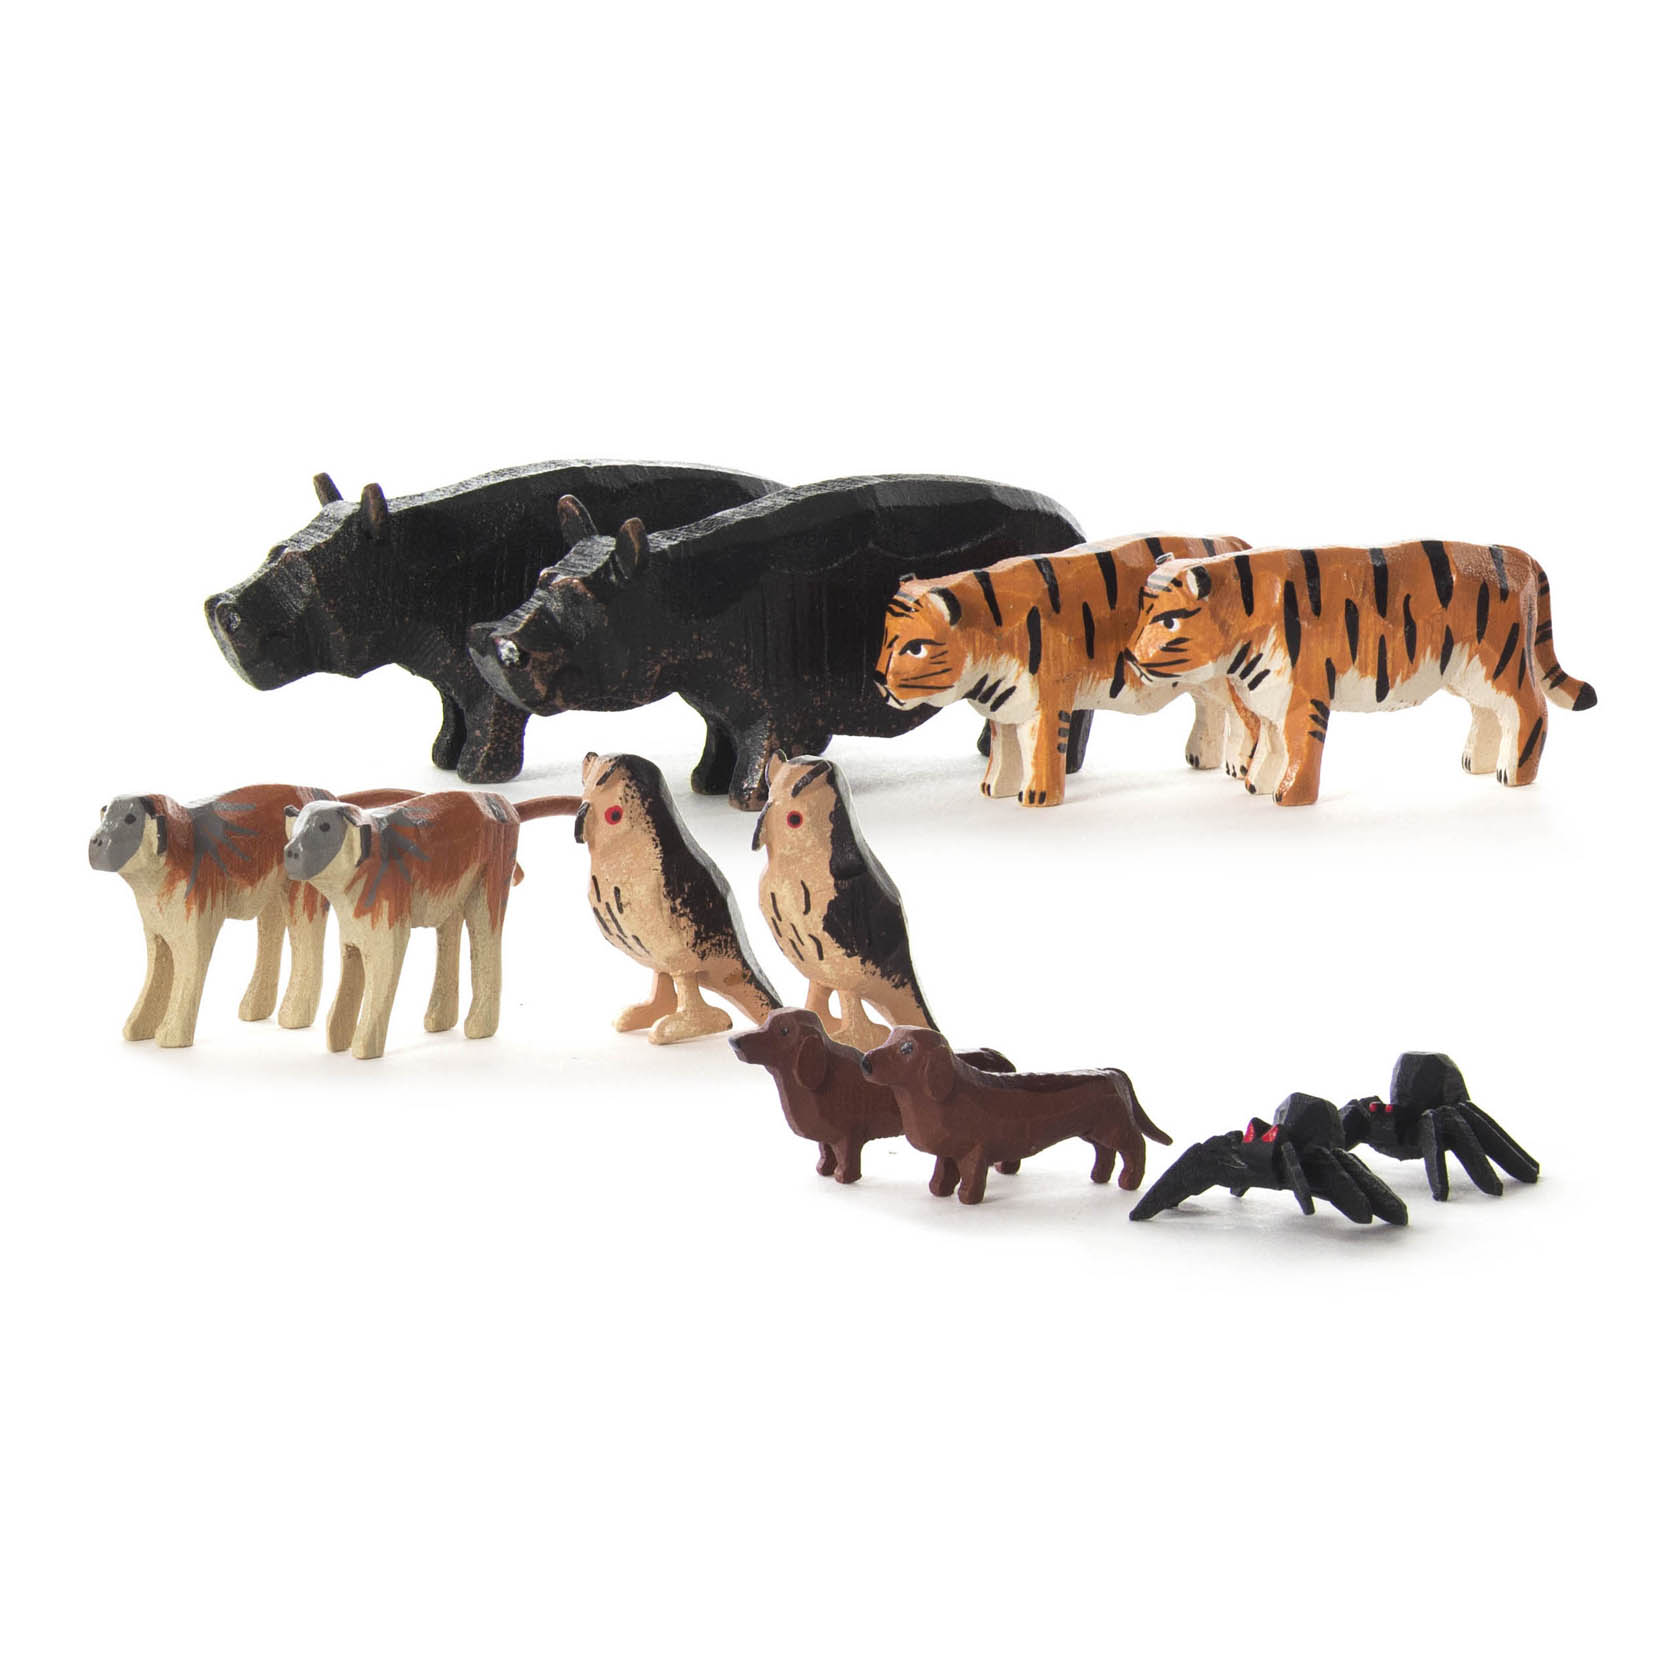 Ergänzung 1 zu Arche Noah (12) Dachshund, Flusspferd, Tiger, Husarenaffe, Uhu und schwarze Witwe im Dregeno Online Shop günstig kaufen